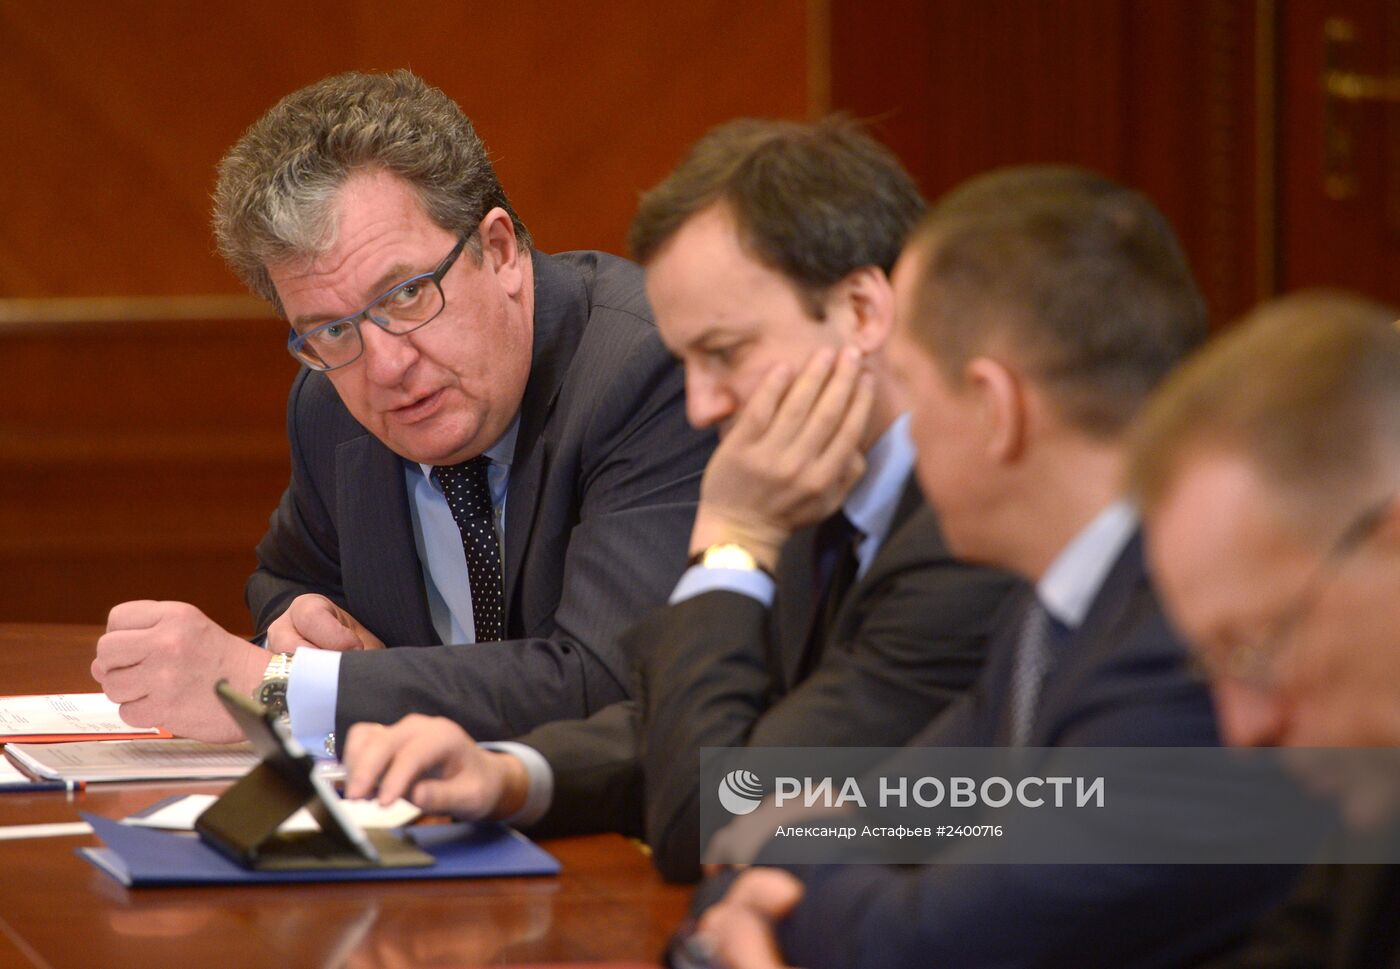 Д.Медведев провел совещание по подготовке к отчету правительства в Госдуме РФ